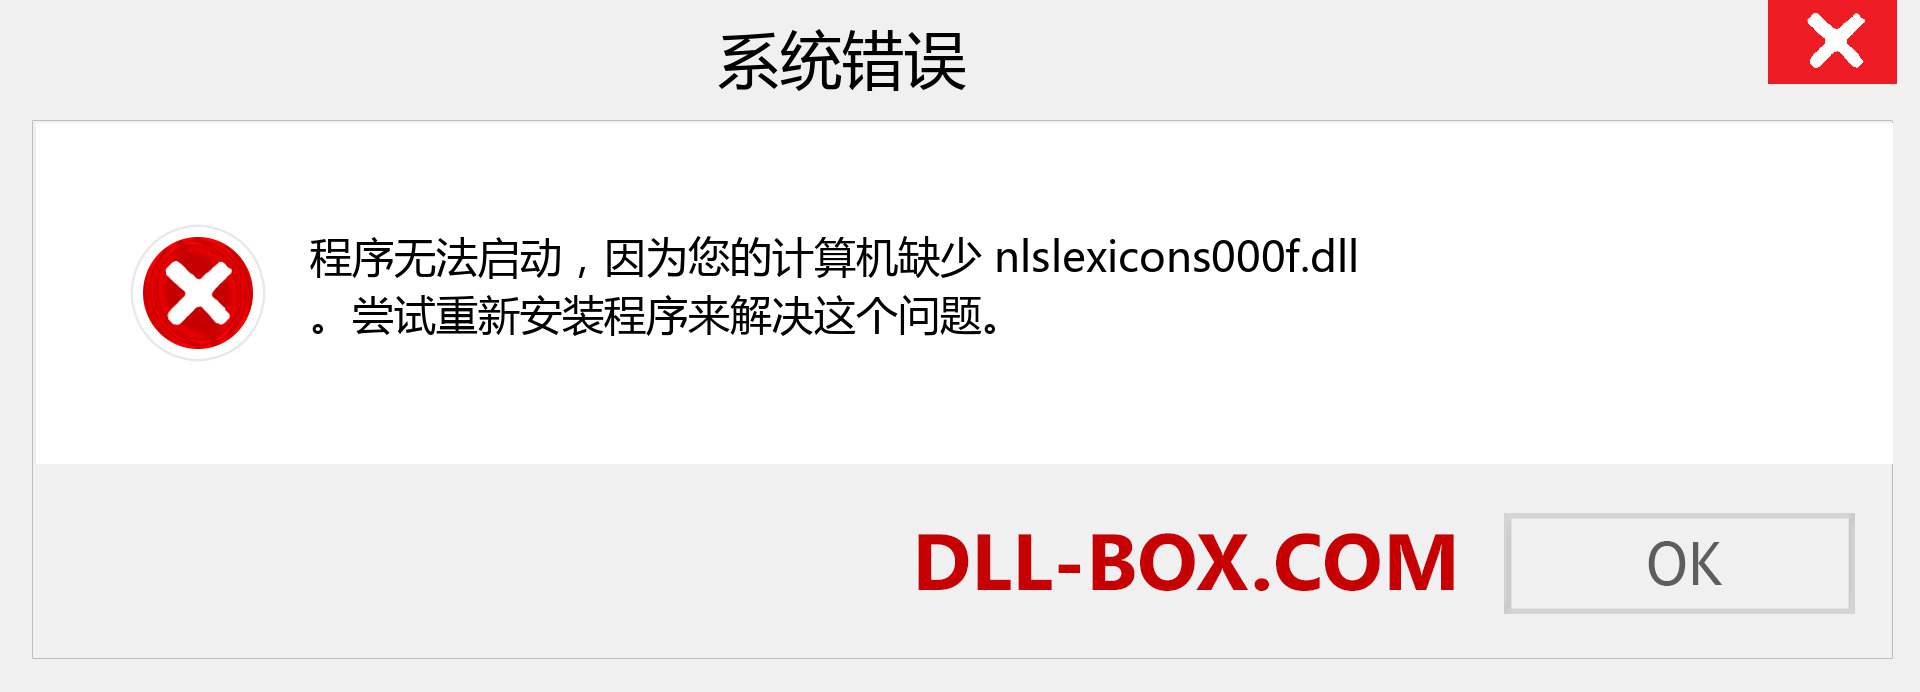 nlslexicons000f.dll 文件丢失？。 适用于 Windows 7、8、10 的下载 - 修复 Windows、照片、图像上的 nlslexicons000f dll 丢失错误